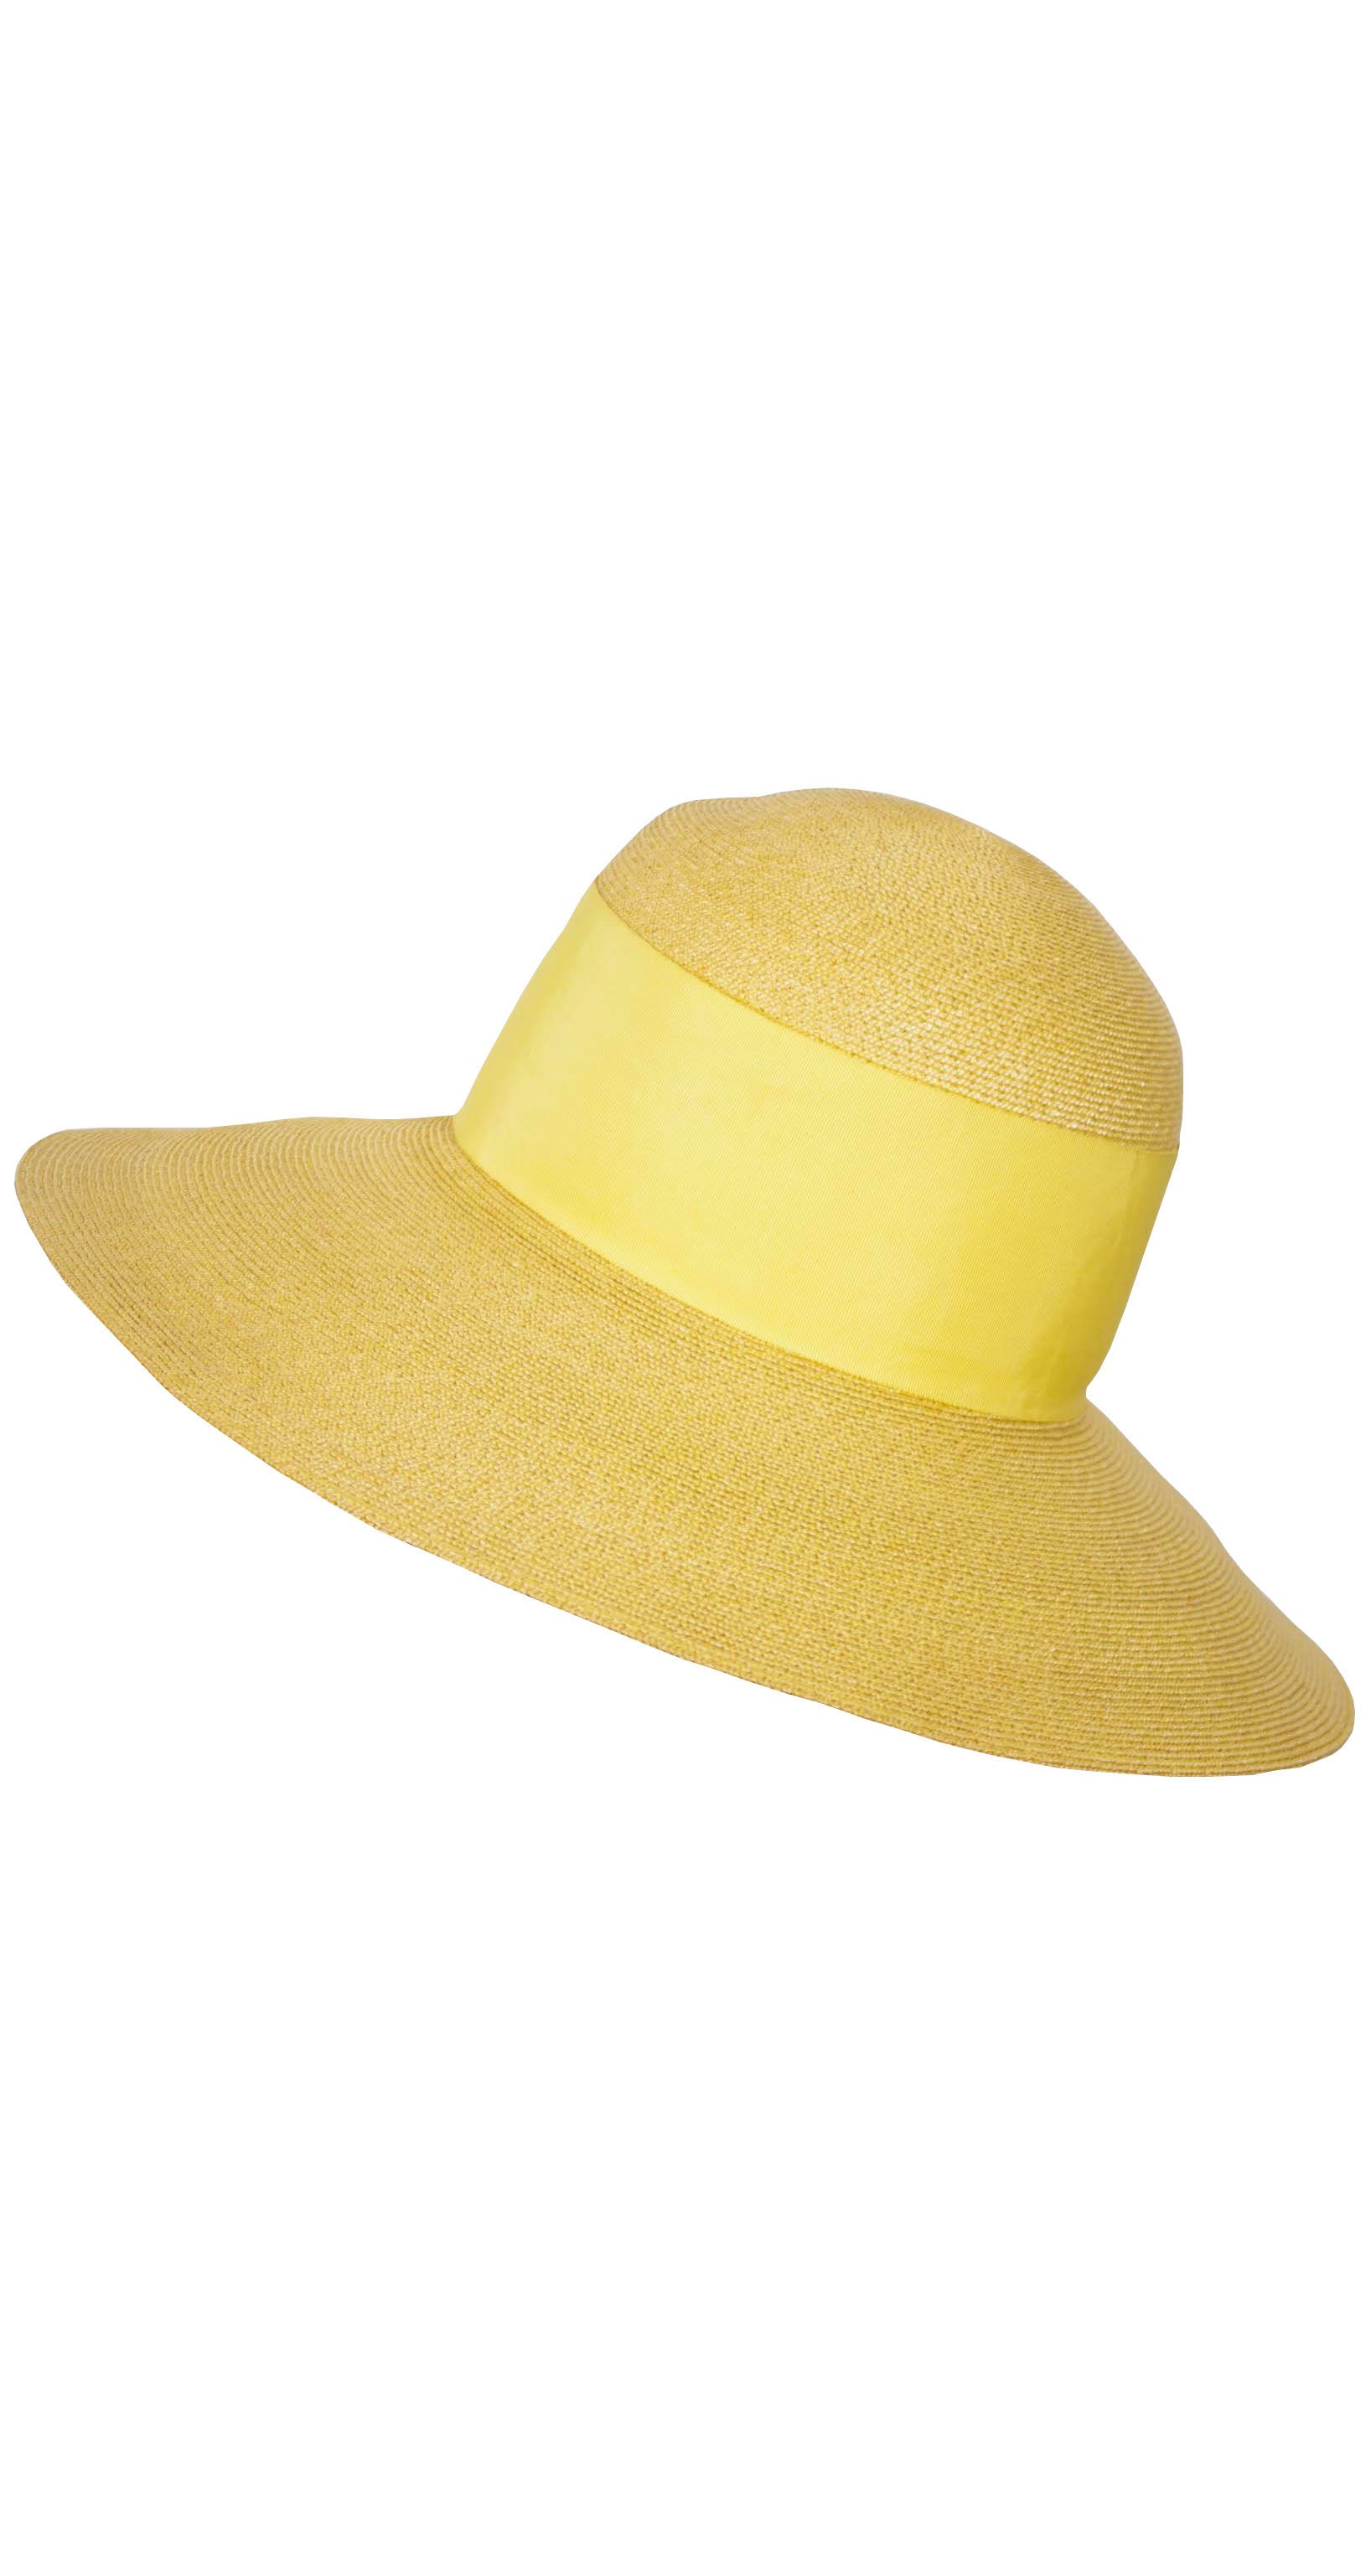 I. Magnin 1960s Vintage Women's Yellow Straw Wide Brim Sun Hat ...